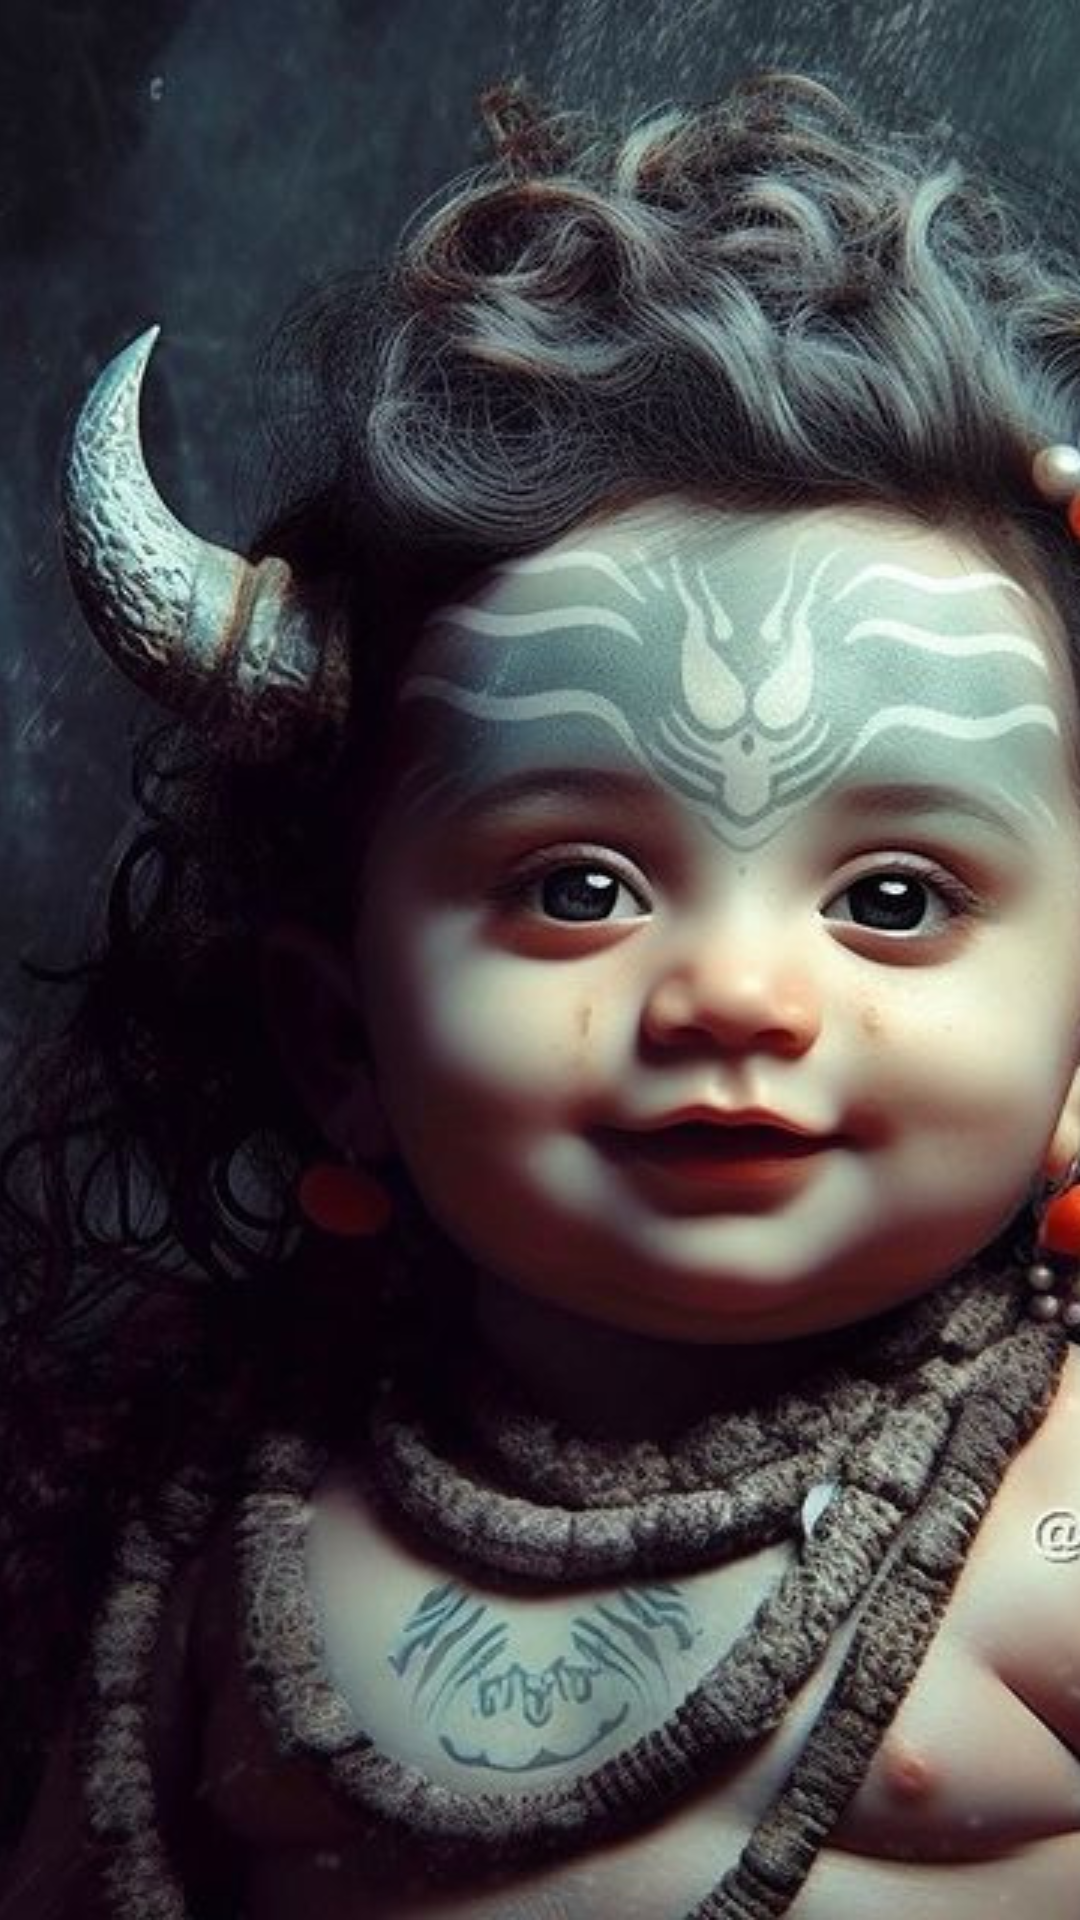 هنرمندان هوش مصنوعی تصاویری از خدایان هندی در نوزادی تولید می کنند